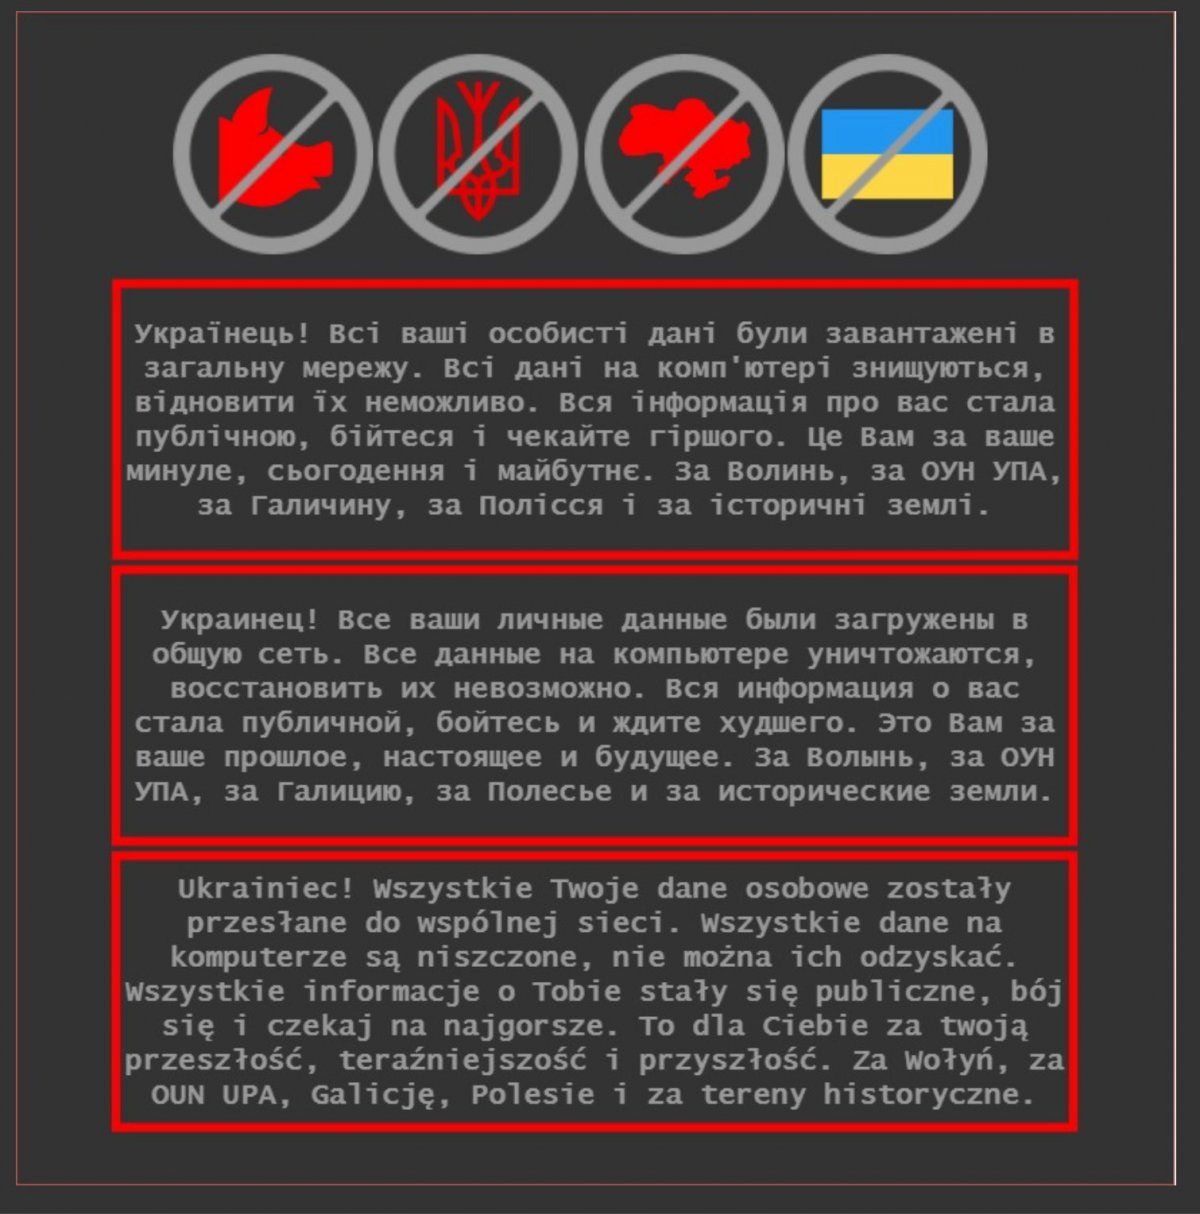 Ukrainako Gobernuaren webguneetan agertutako mezua. BERRIA